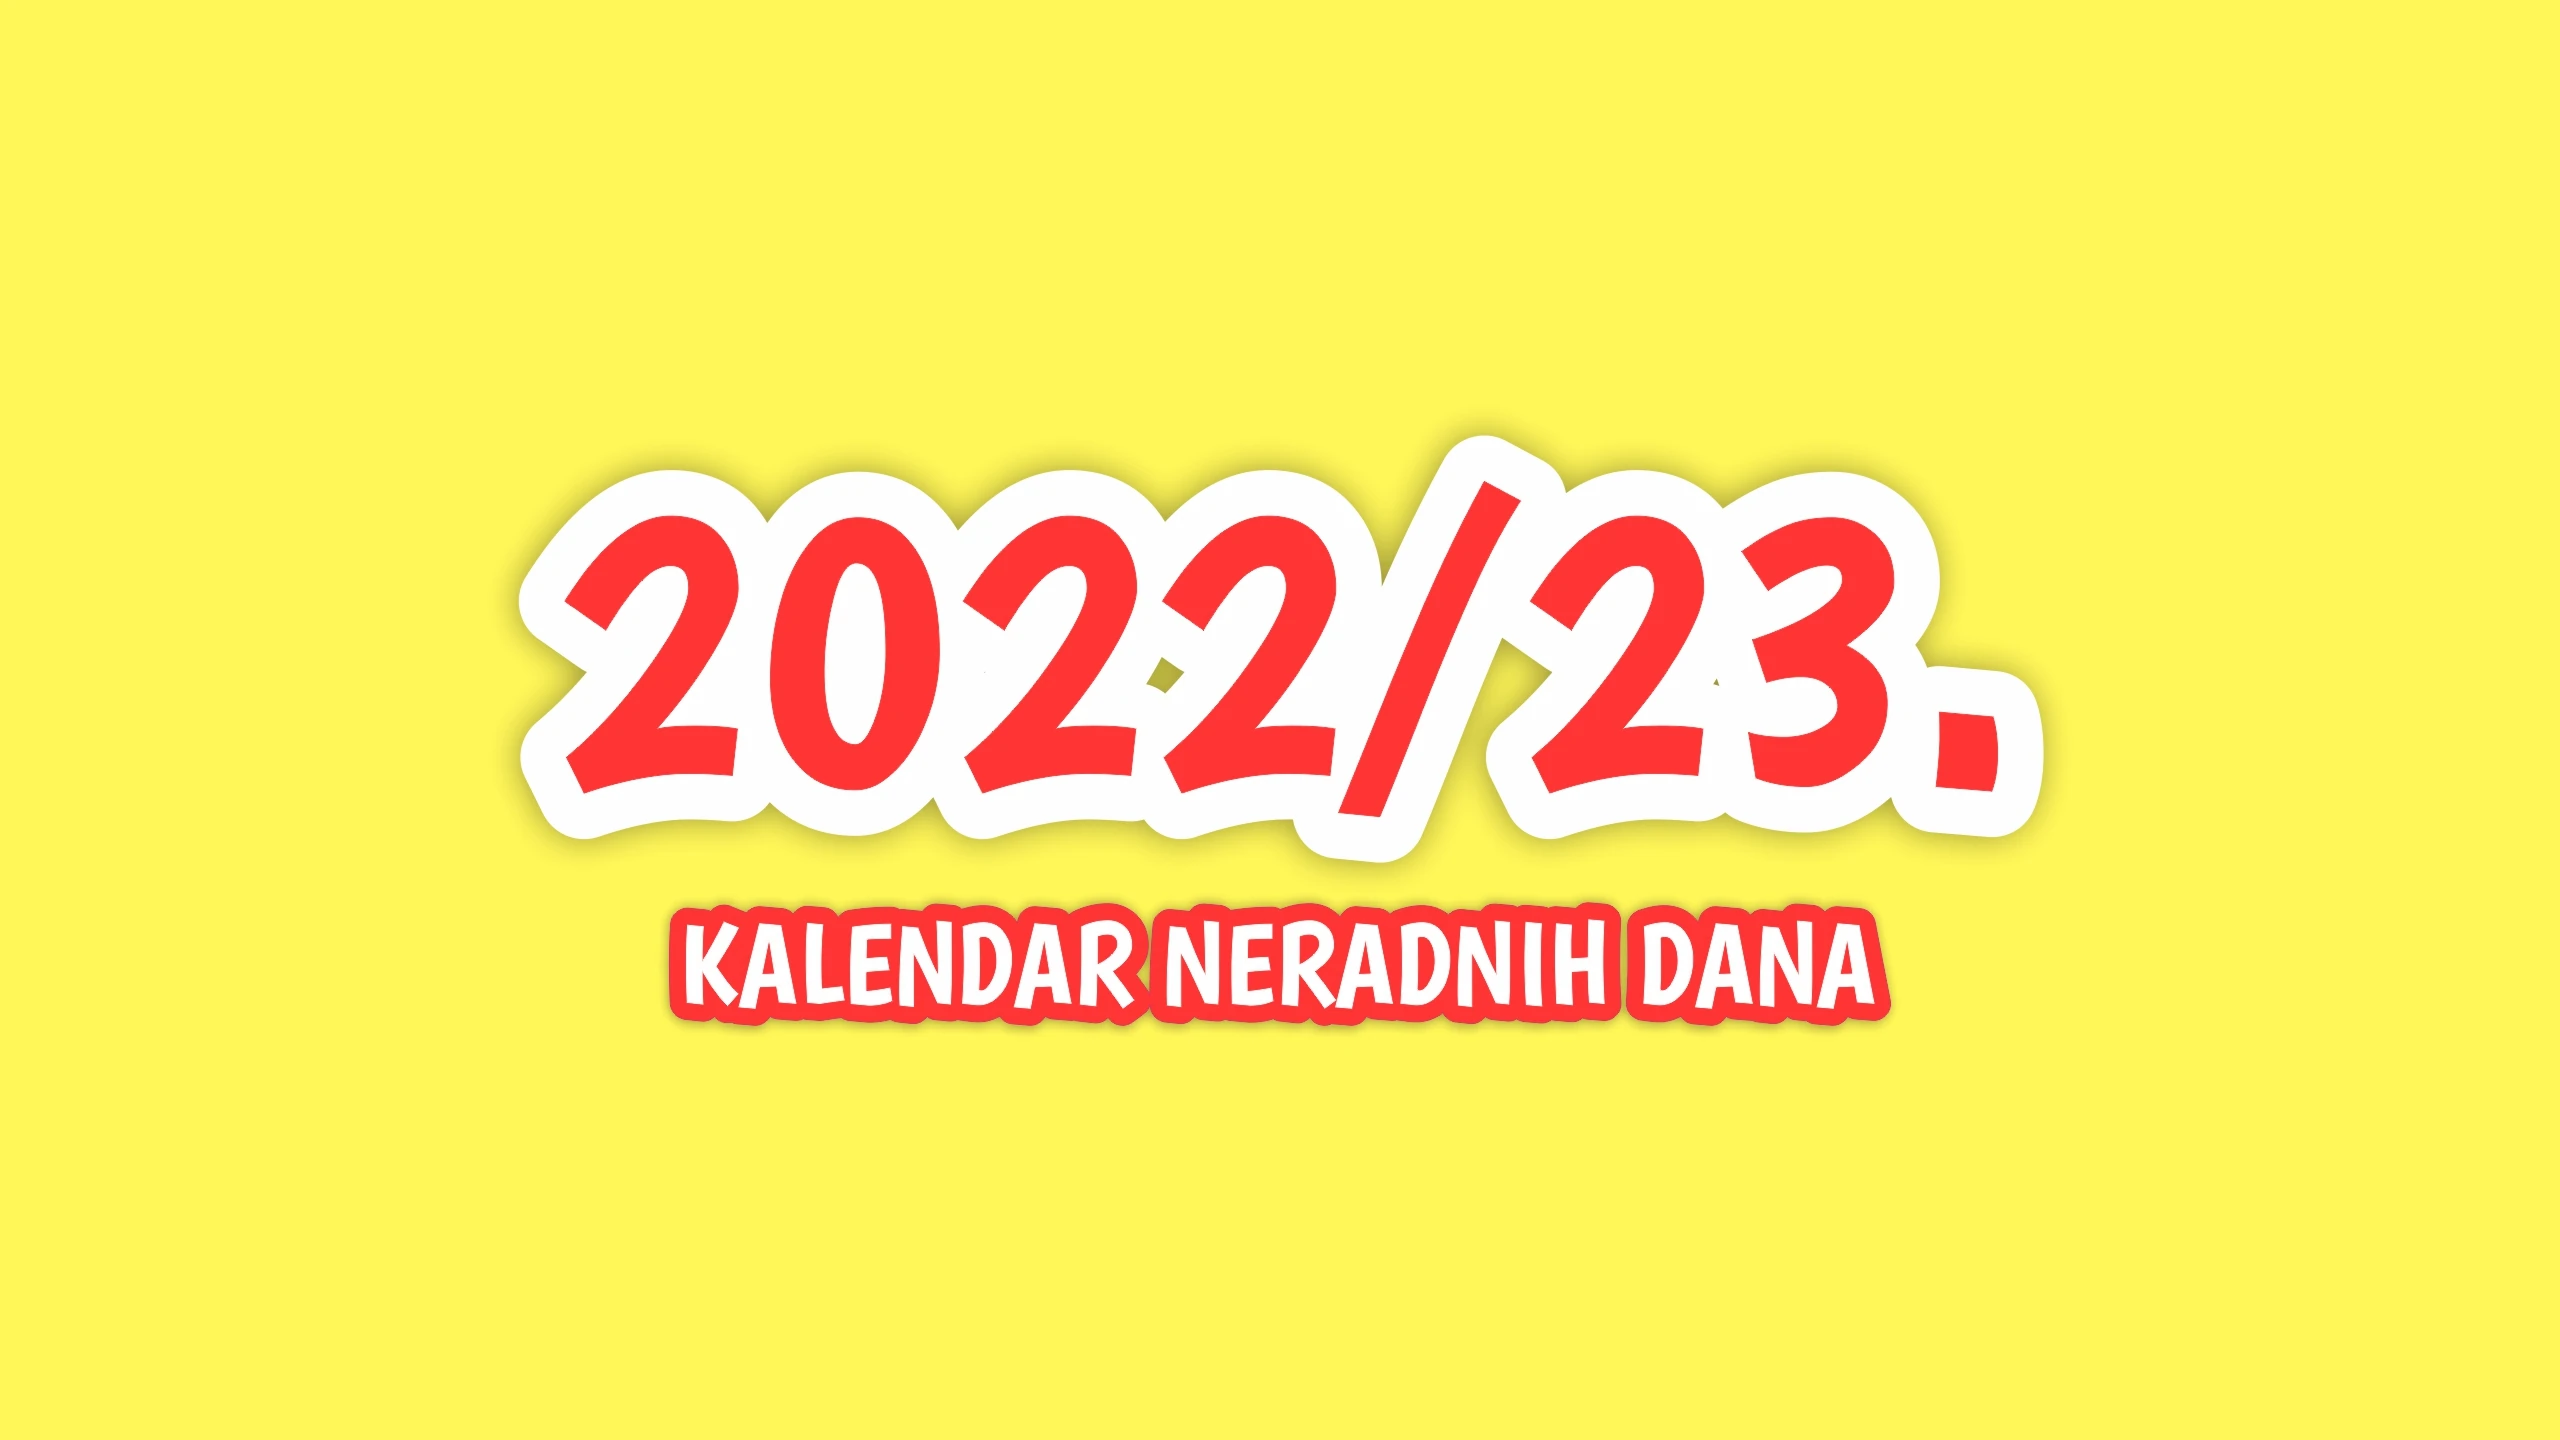 Kalendar neradnih dana za školsku godinu 2022/2023.